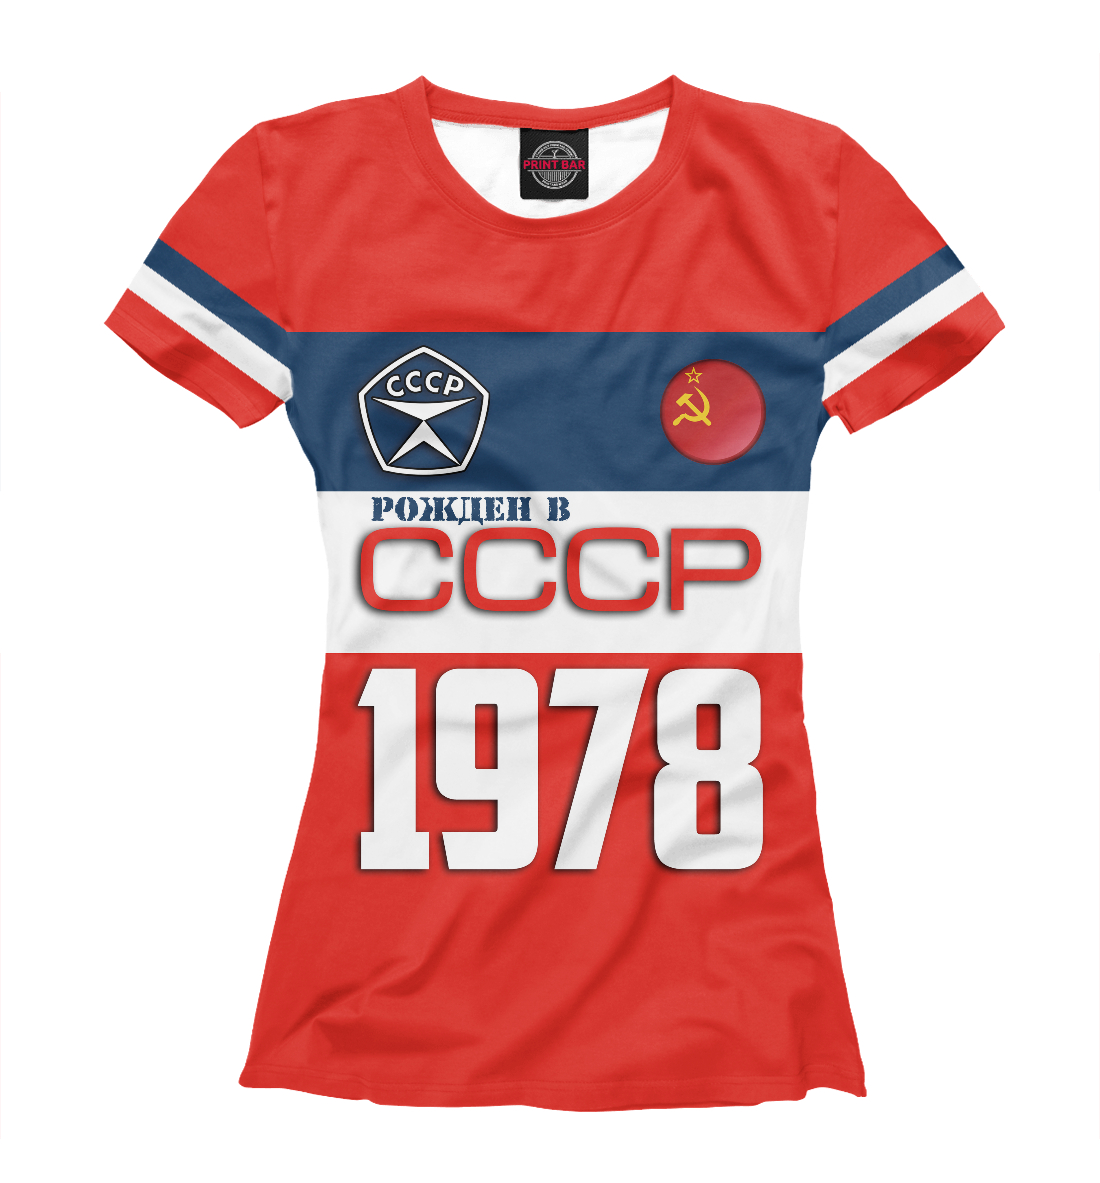 Футболка Рожден в СССР 1978 год для женщин, артикул: SSS-976646-fut-1mp